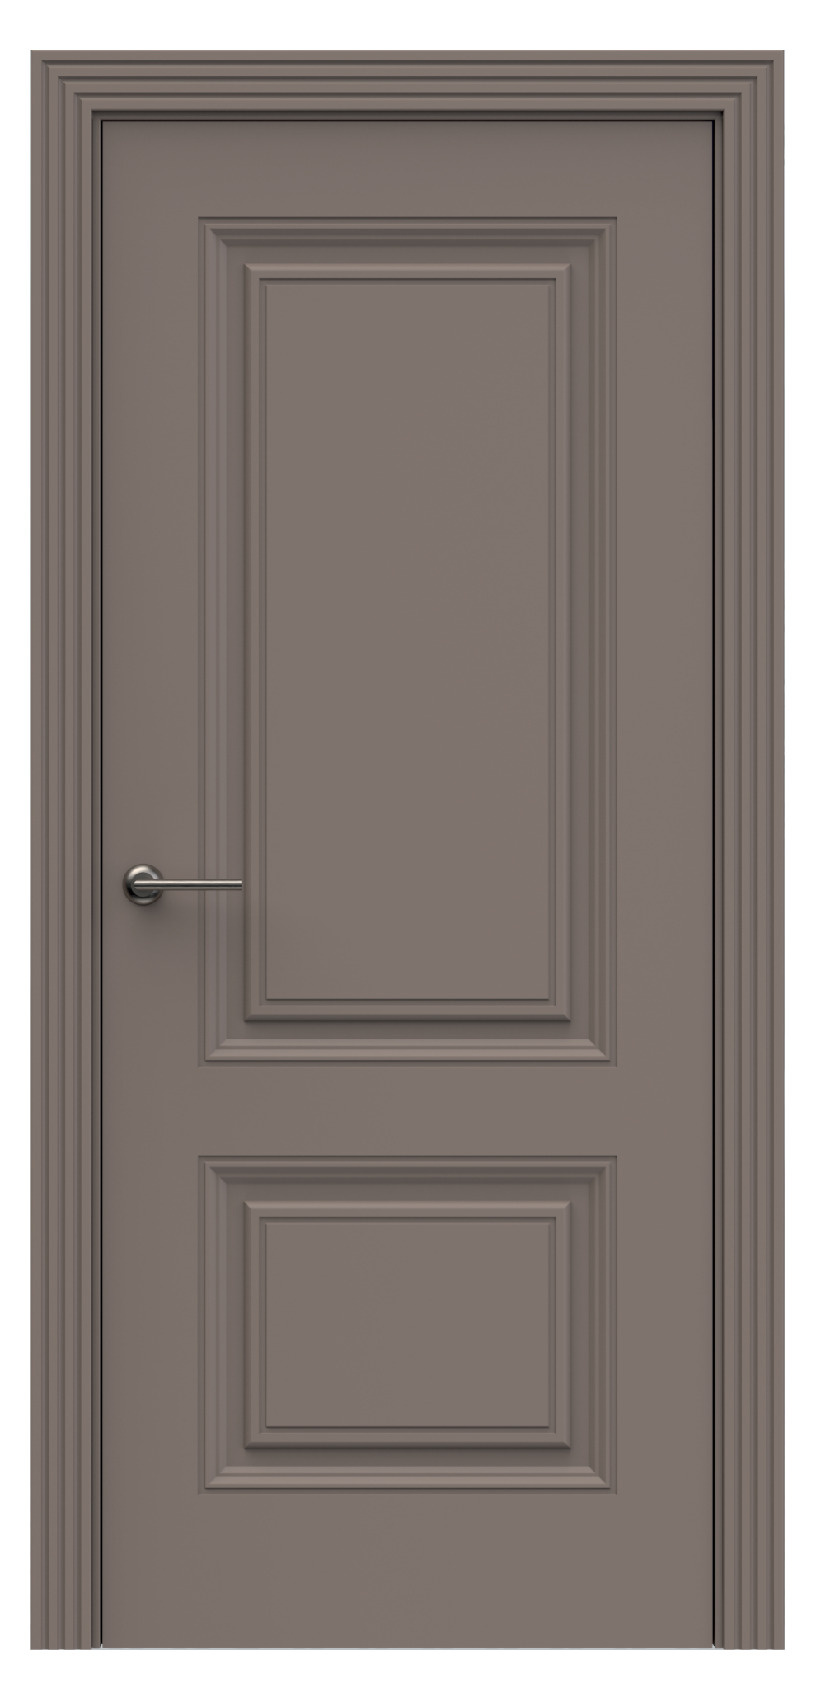 Questdoors Межкомнатная дверь QB1, арт. 17902 - фото №1